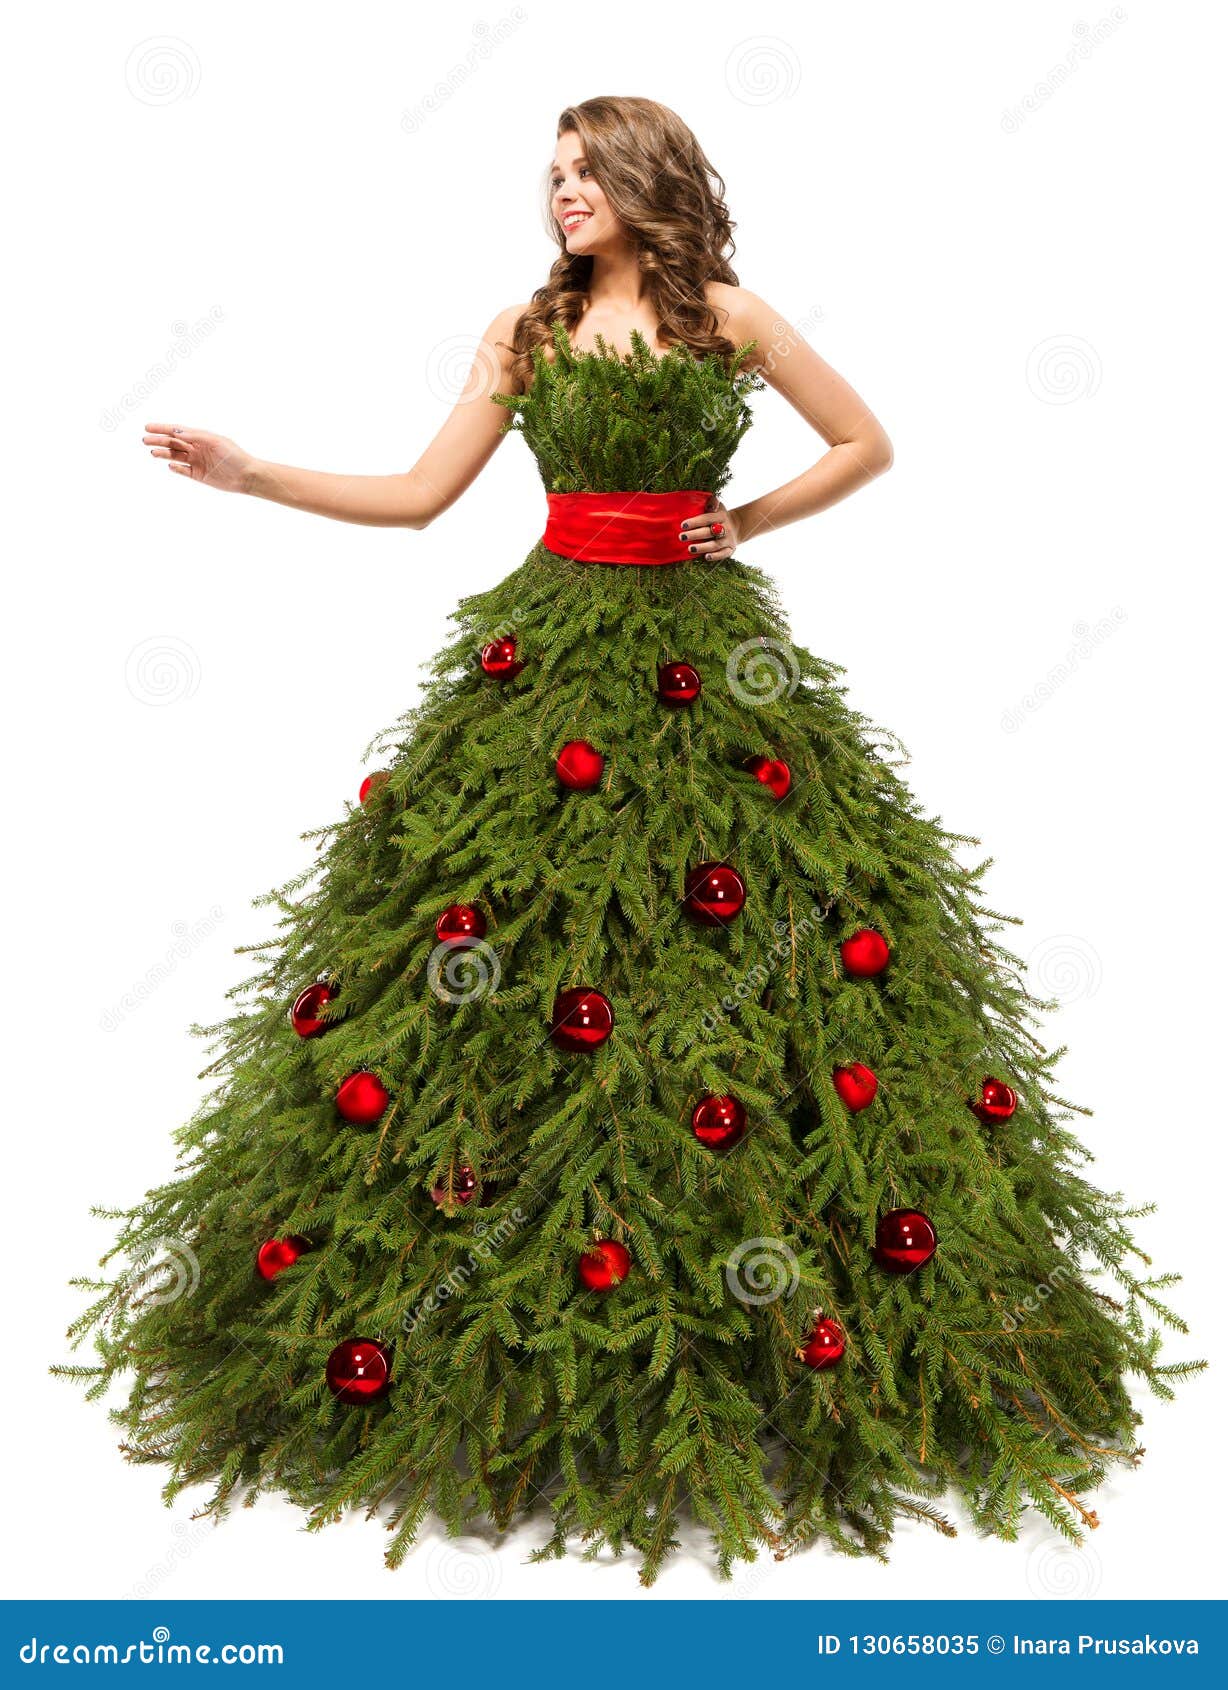 Vestido Del árbol De Navidad, Mujer De La Moda Y Actuales Regalos, Blancos  Imagen de archivo - Imagen de encanto, completo: 130658035